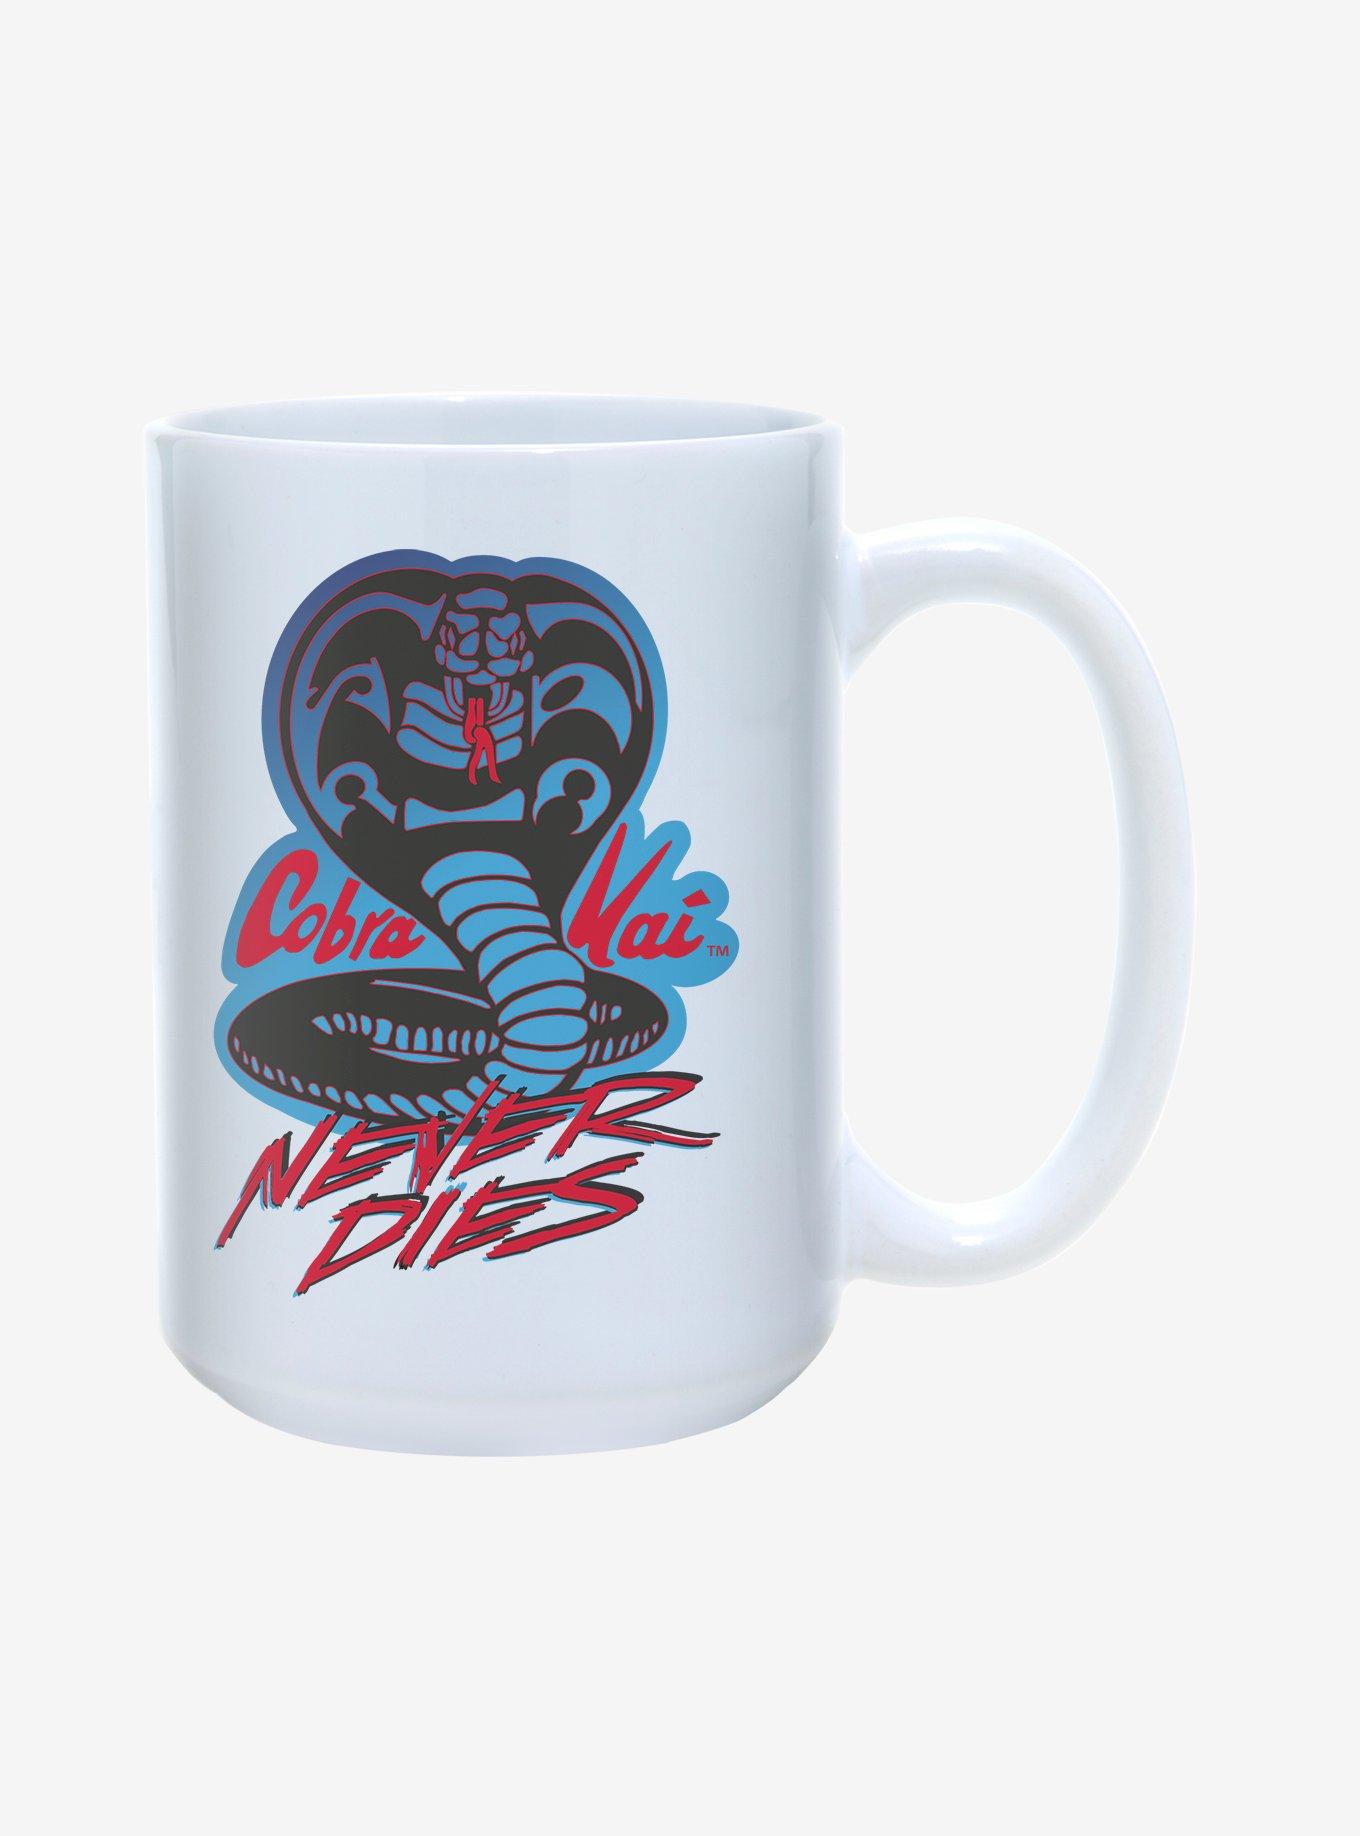 Cobra Kai Never Dies Mug 15oz